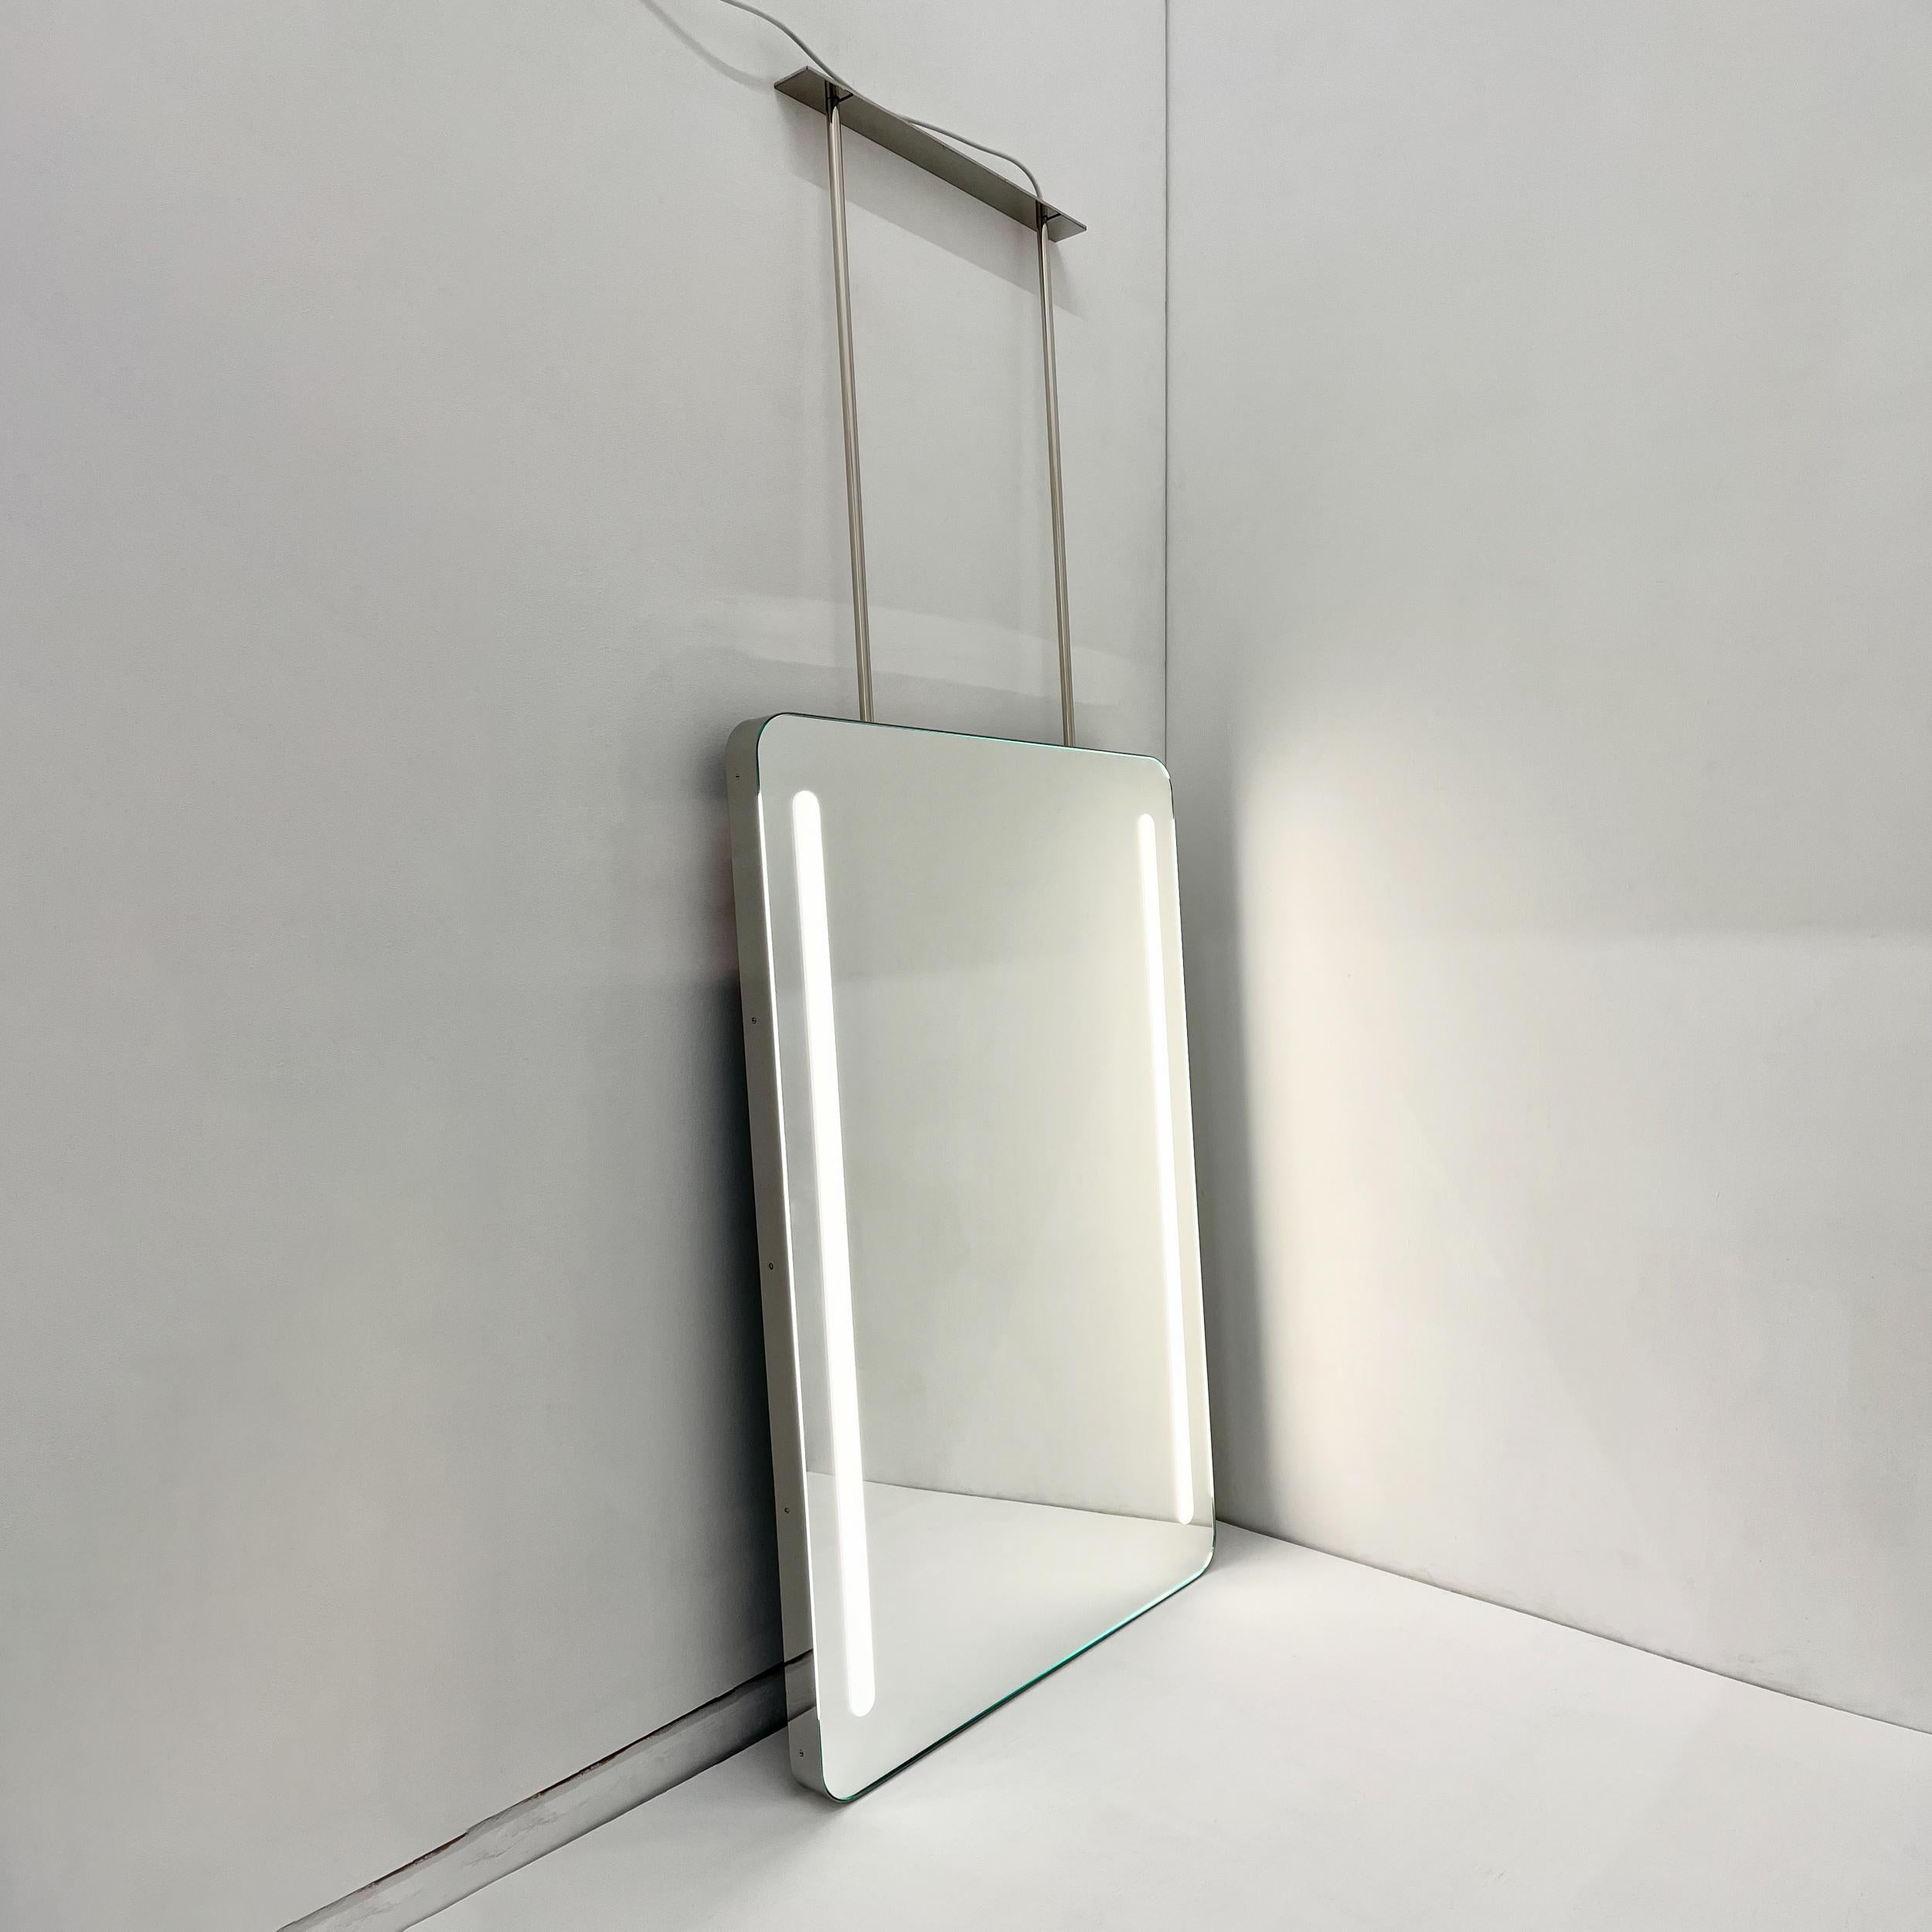 Magnifique miroir rectangulaire moderne avec un cadre en acier inoxydable poli et un éclairage frontal.  Cette pièce fait partie de notre collection originale et entièrement personnalisable de miroirs suspendus au plafond, conçus et fabriqués à la